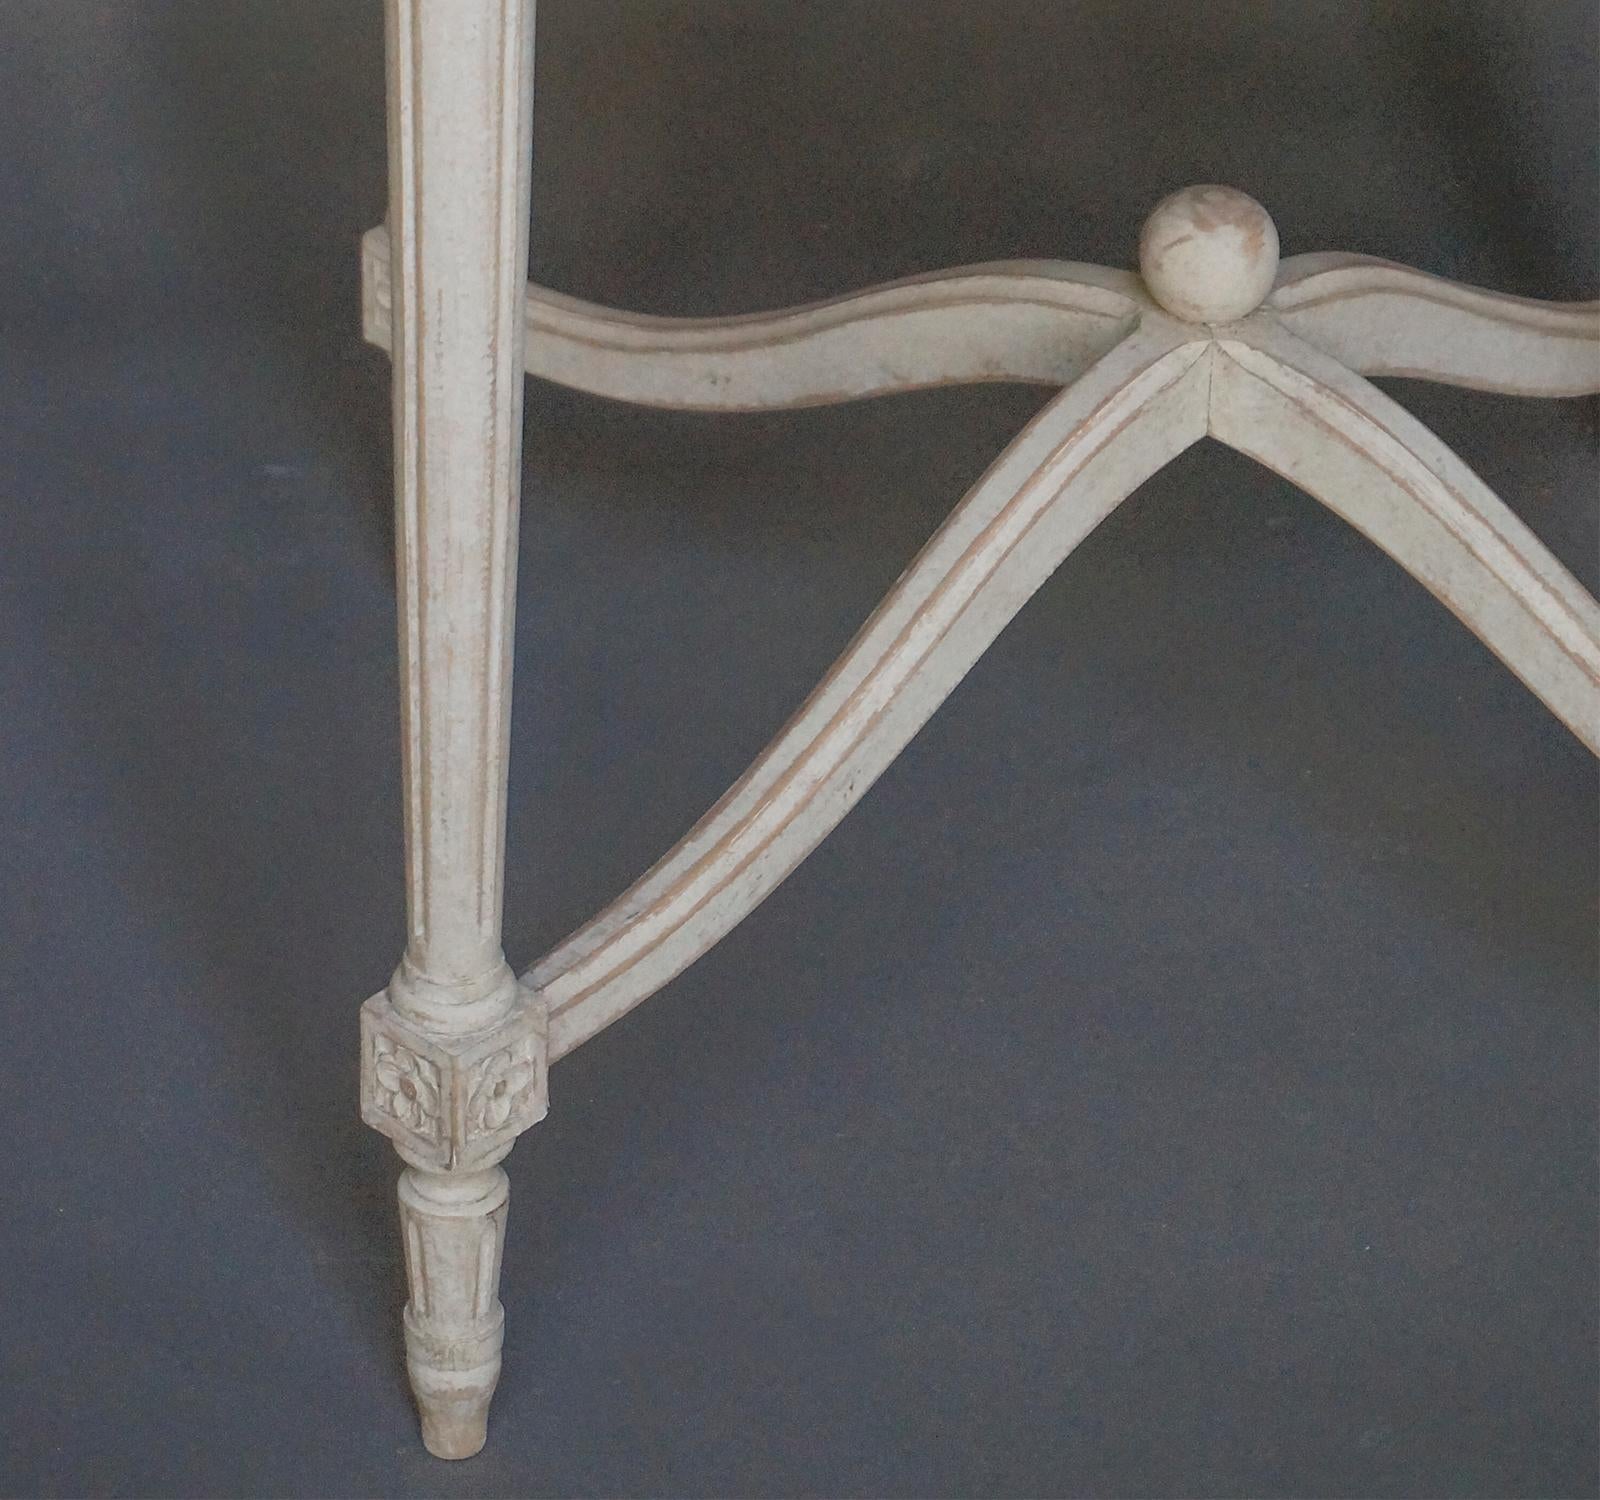 Tisch im gustavianischen Stil mit bogenförmigen Streckern (Handgeschnitzt)